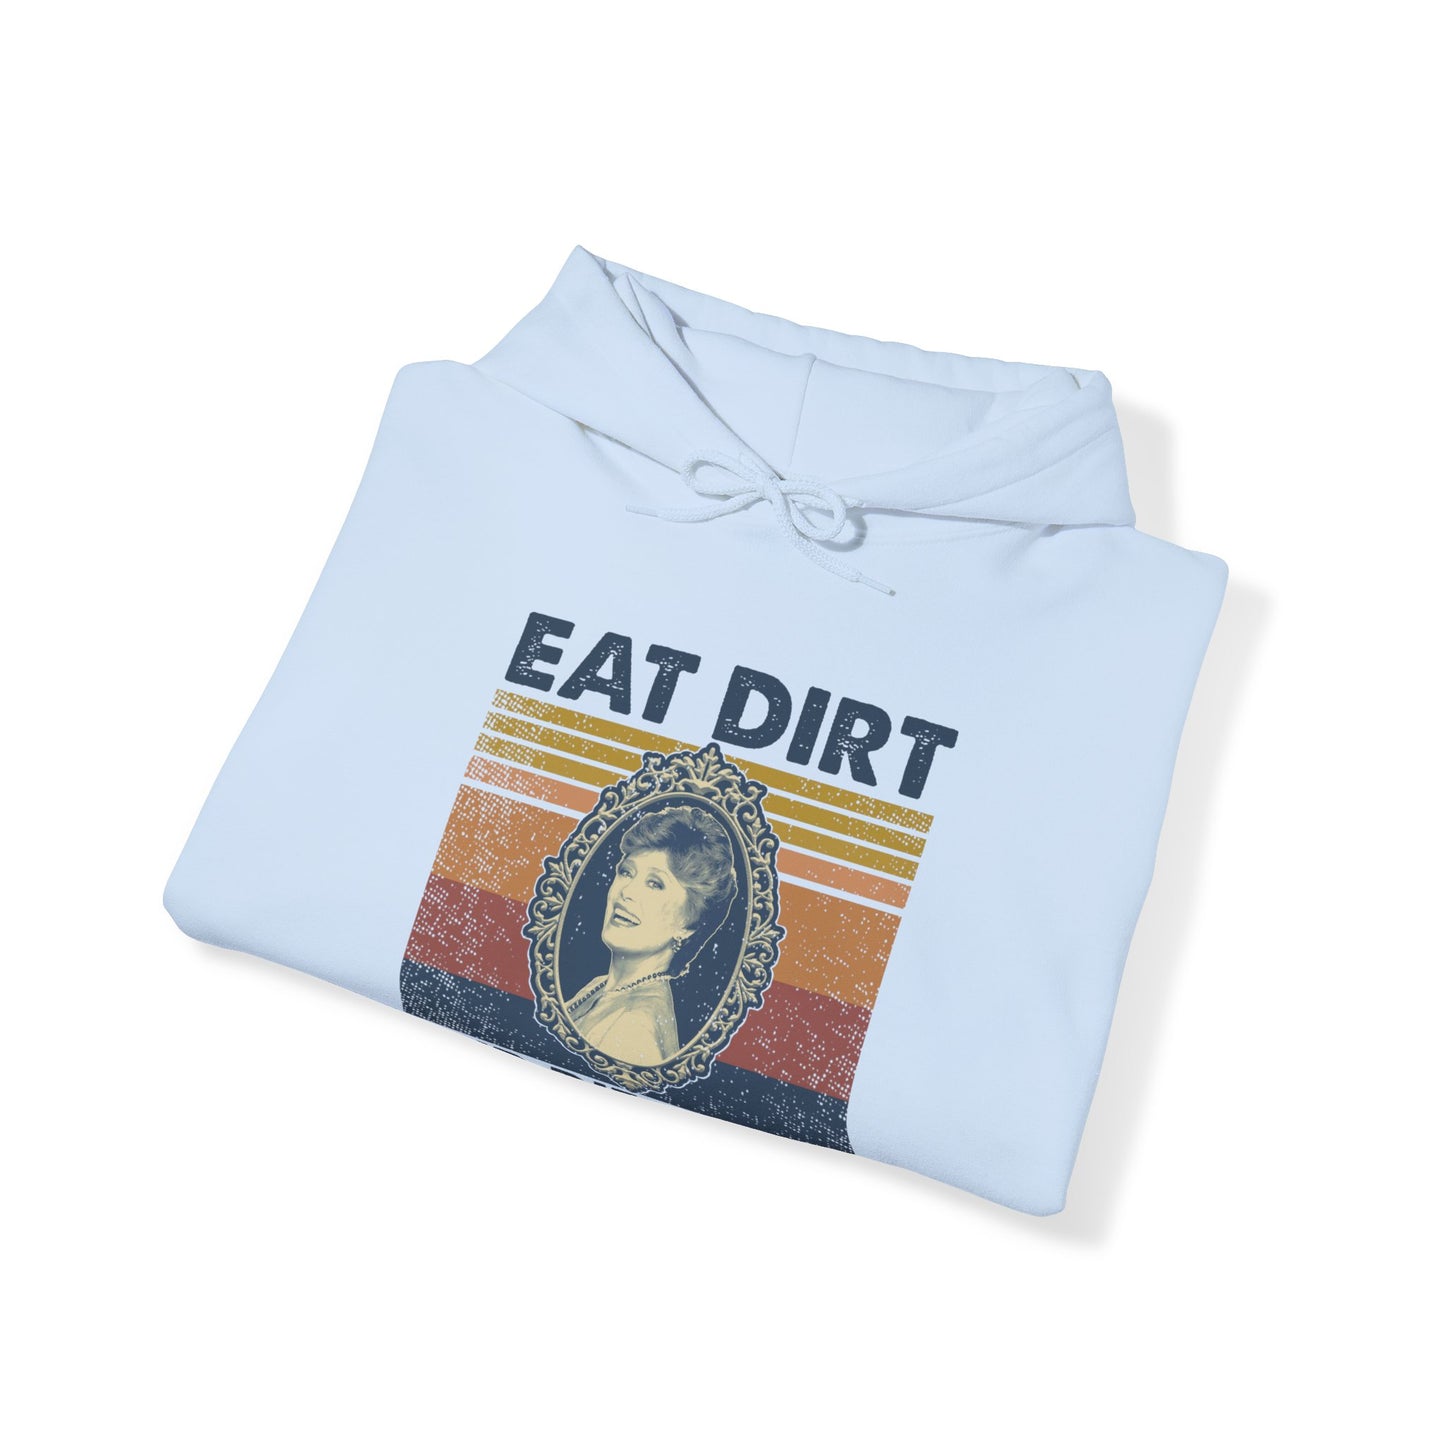 Eat Dirt and Die Trash